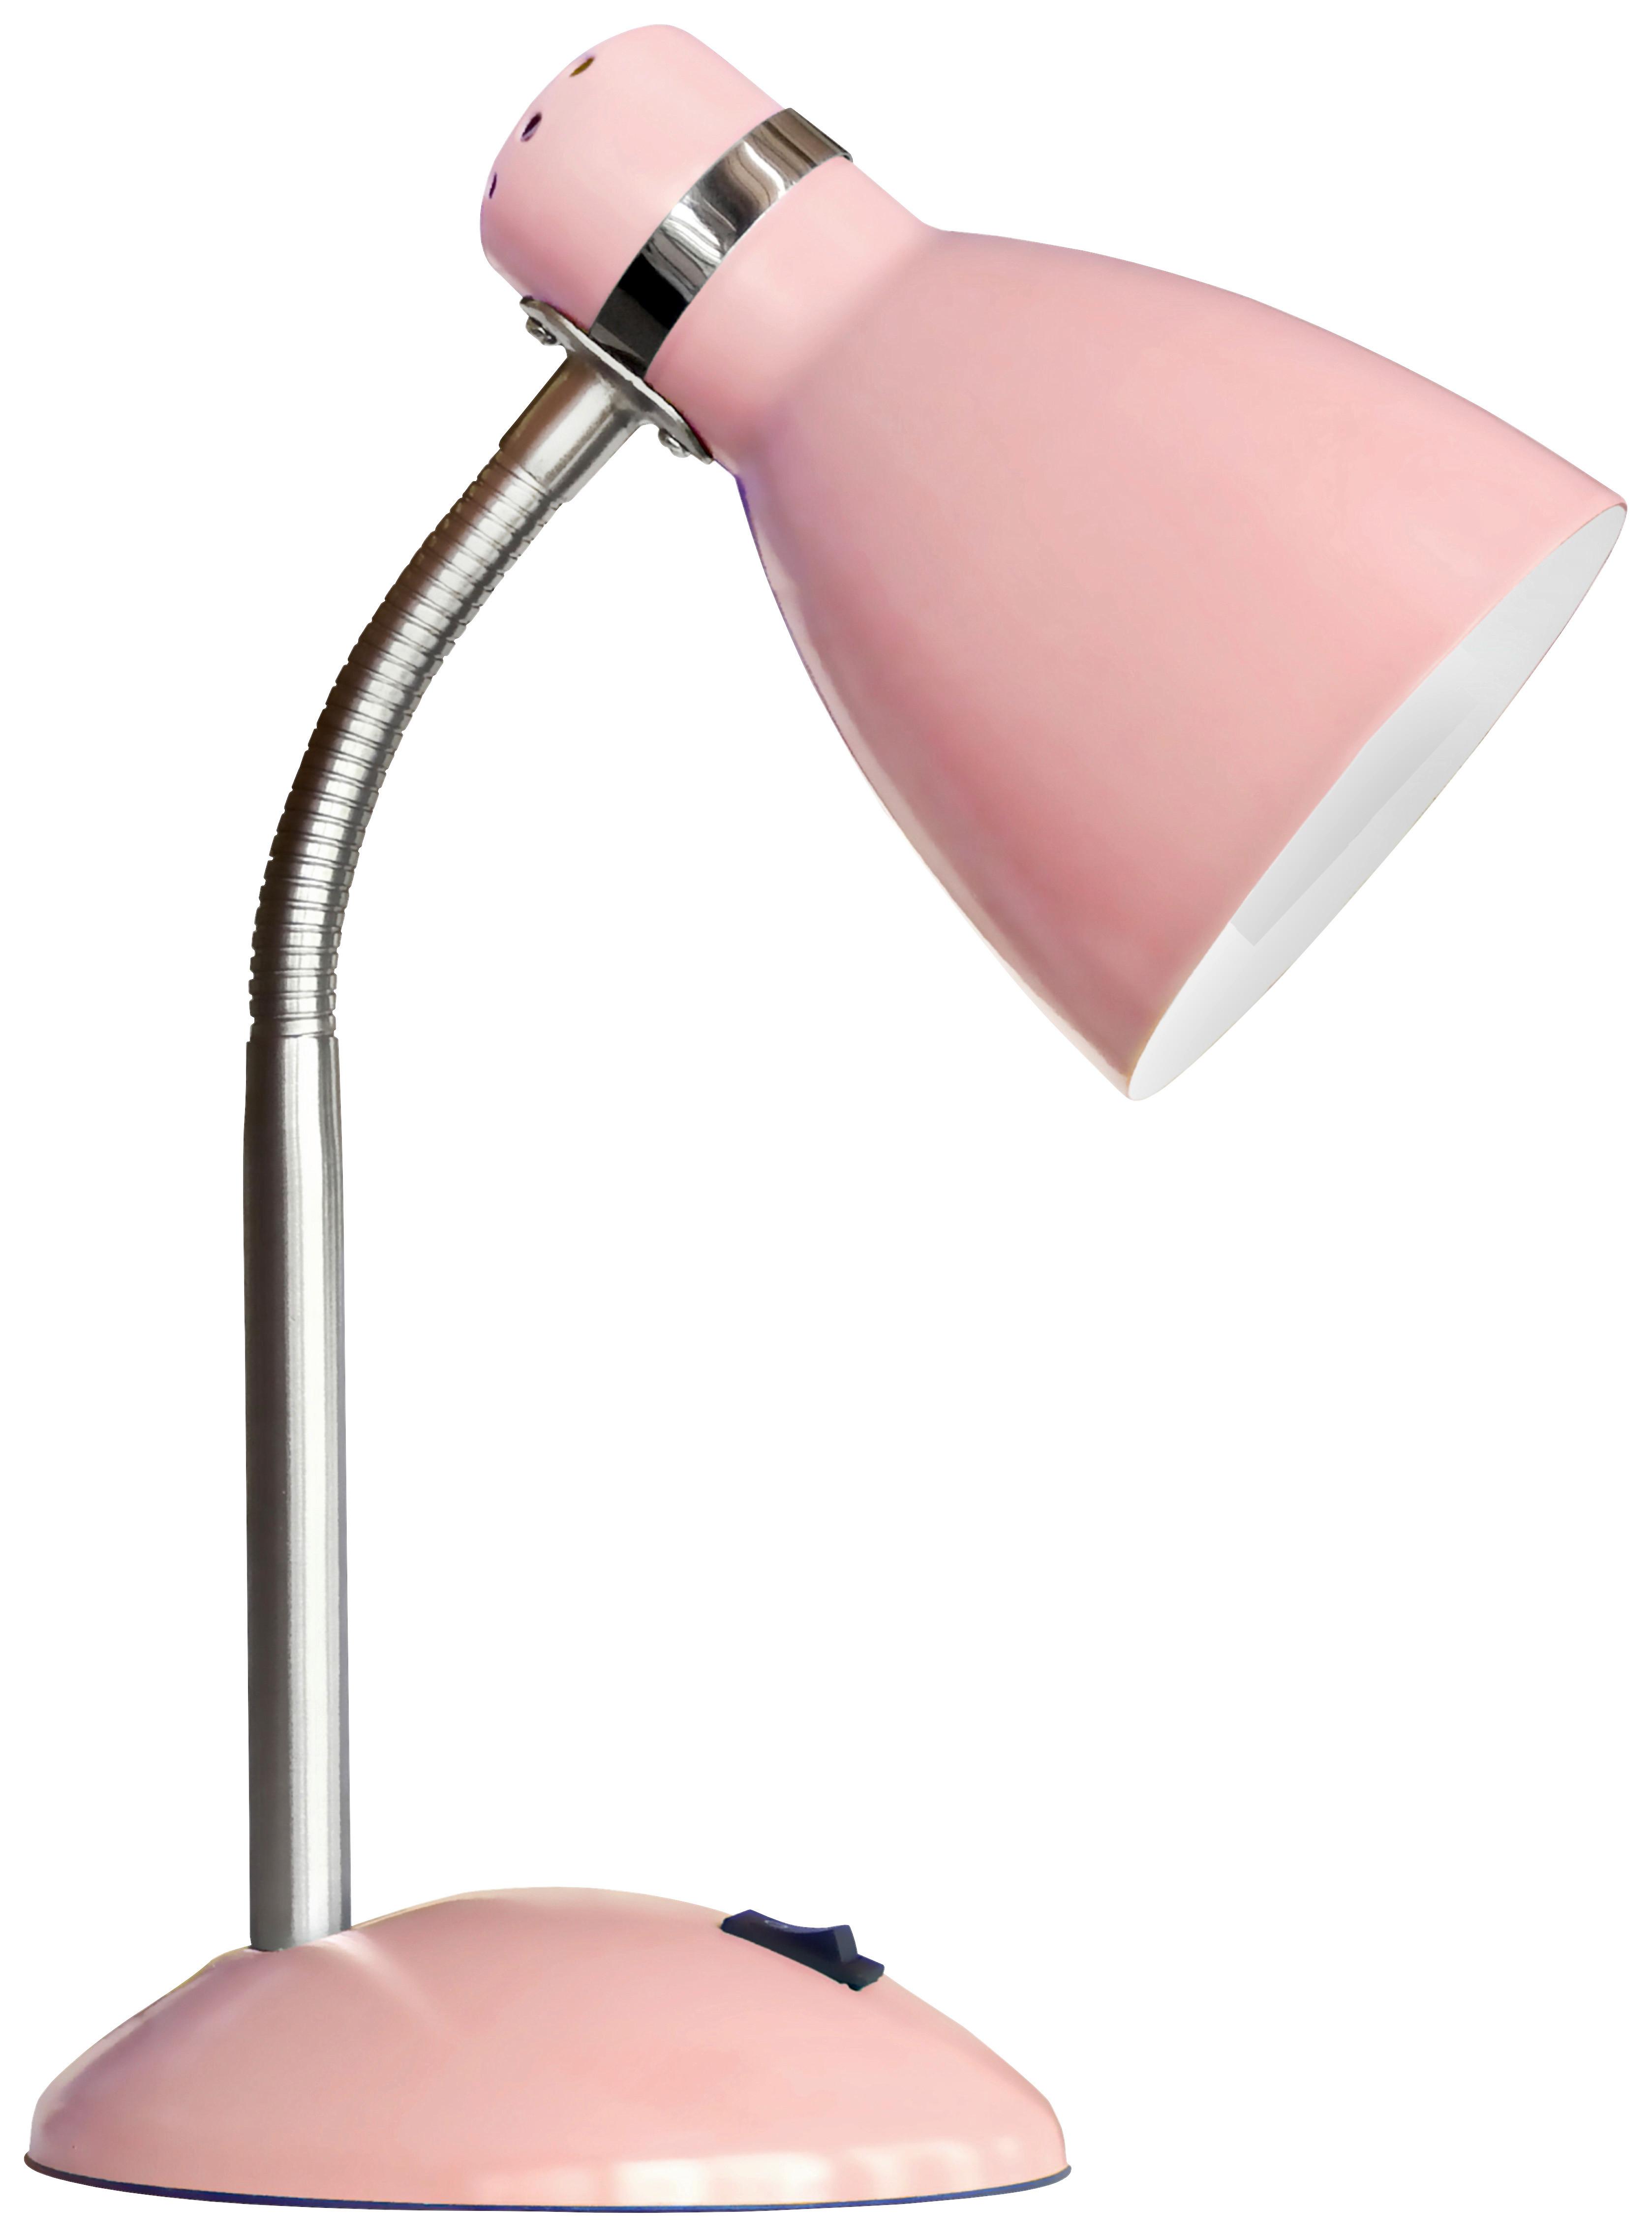 Stolová Lampa Elif V: 30cm, 25 Watt - staroružová, Štýlový, kov (30cm) - Modern Living